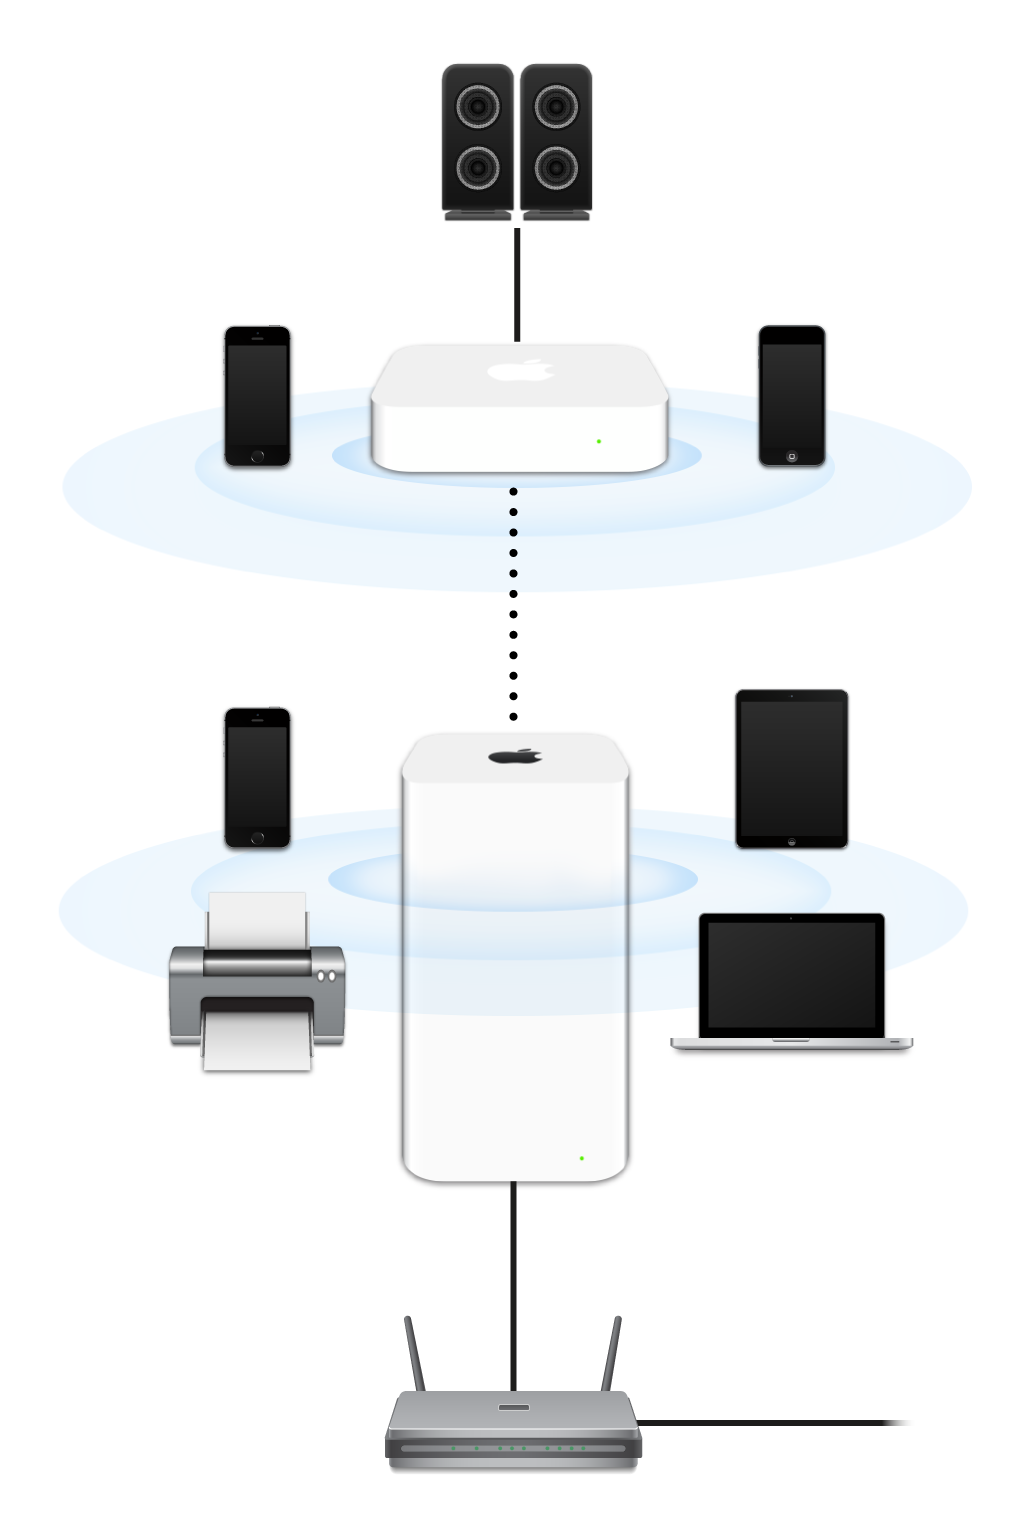 Un réseau étendu, comprenant des bornes AirPort Extreme et AirPort Express, connectées à un modem et transmettant des données à un ensemble d’appareils.